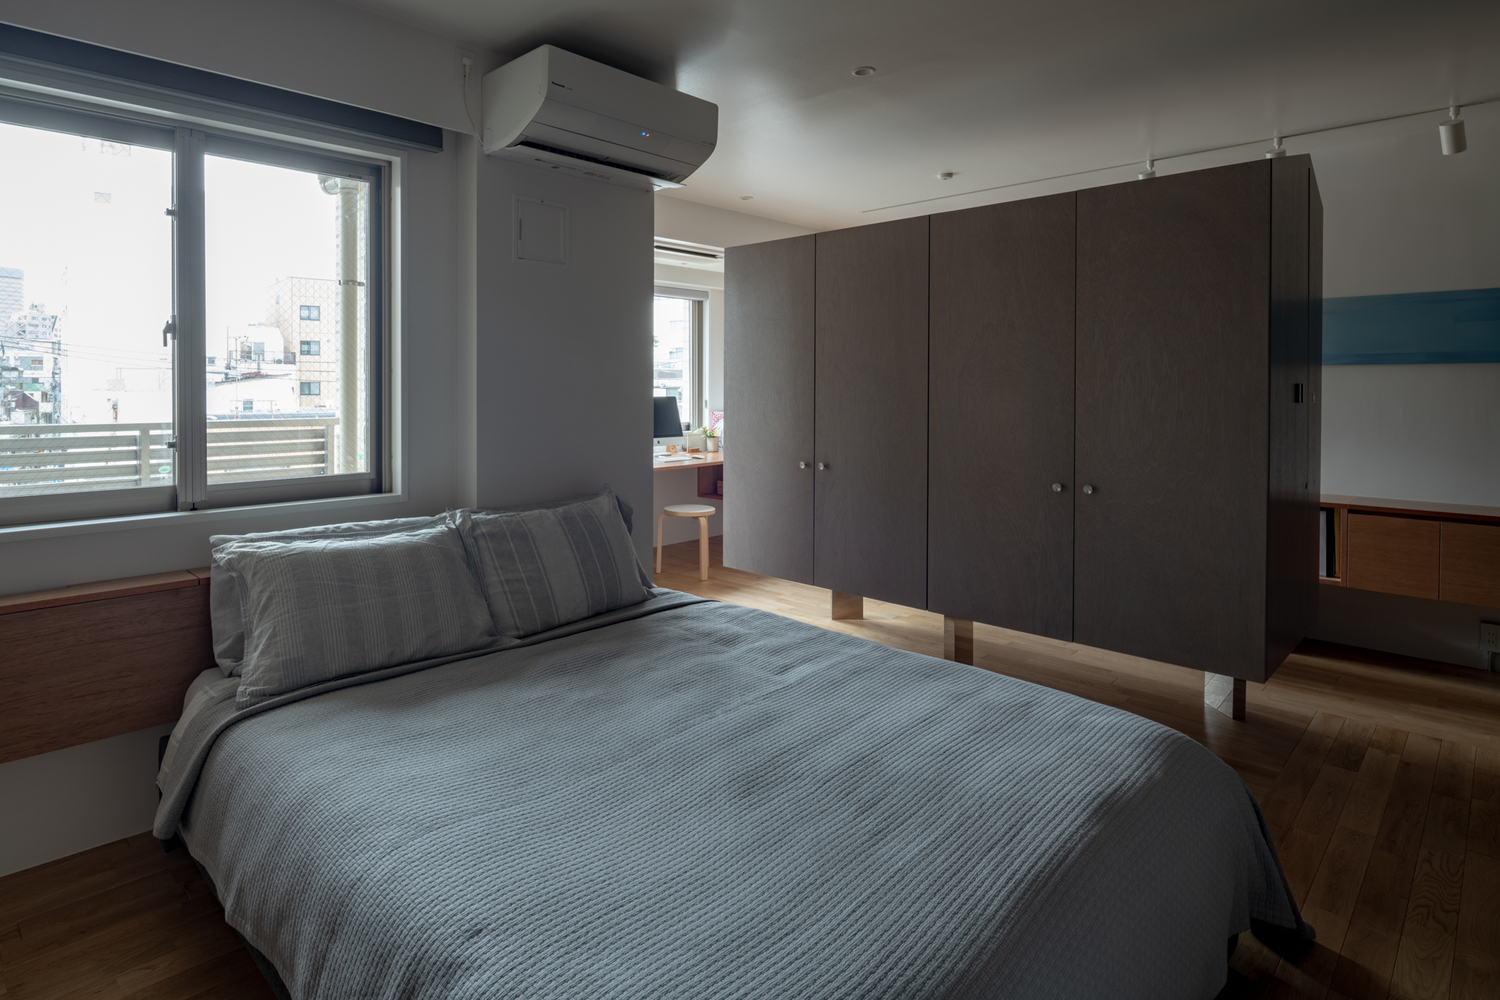 hình ảnh phòng ngủ đơn giản với tường sơn màu trắng sáng, ga gối màu xám, cửa sổ kính trong suốt, tủ quần áo lơ lửng